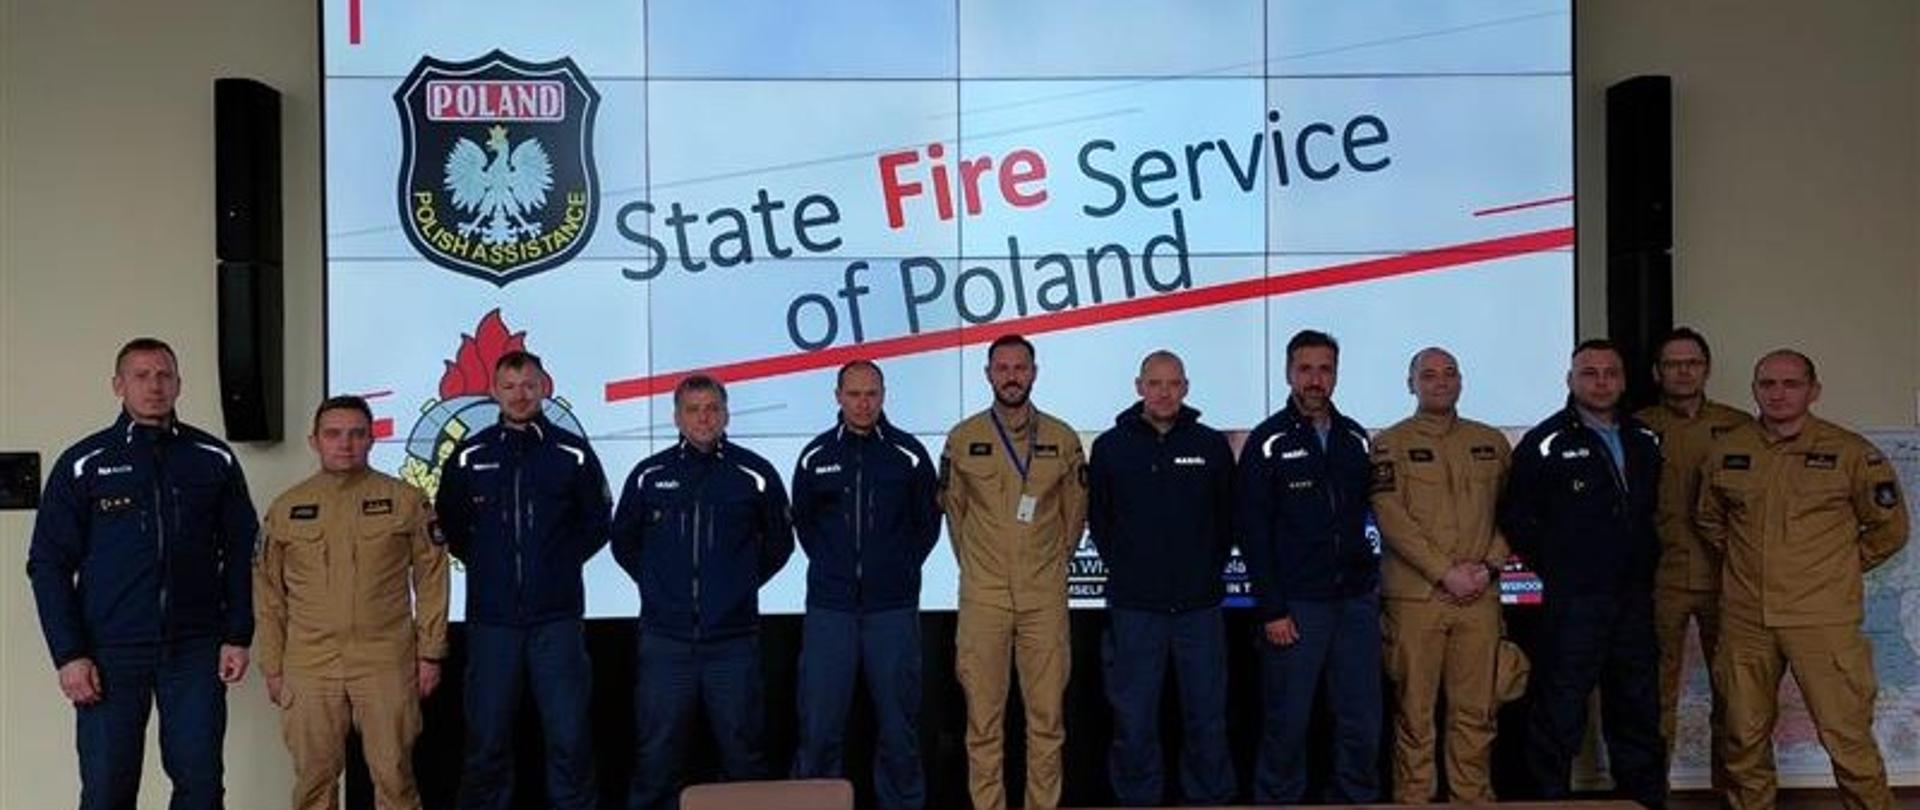  polscy i słowaccy strażacy stoją w szeregu pozując do zdjęcia, za nimi na monitorze wyświetlony napis State Fire Service od Poland